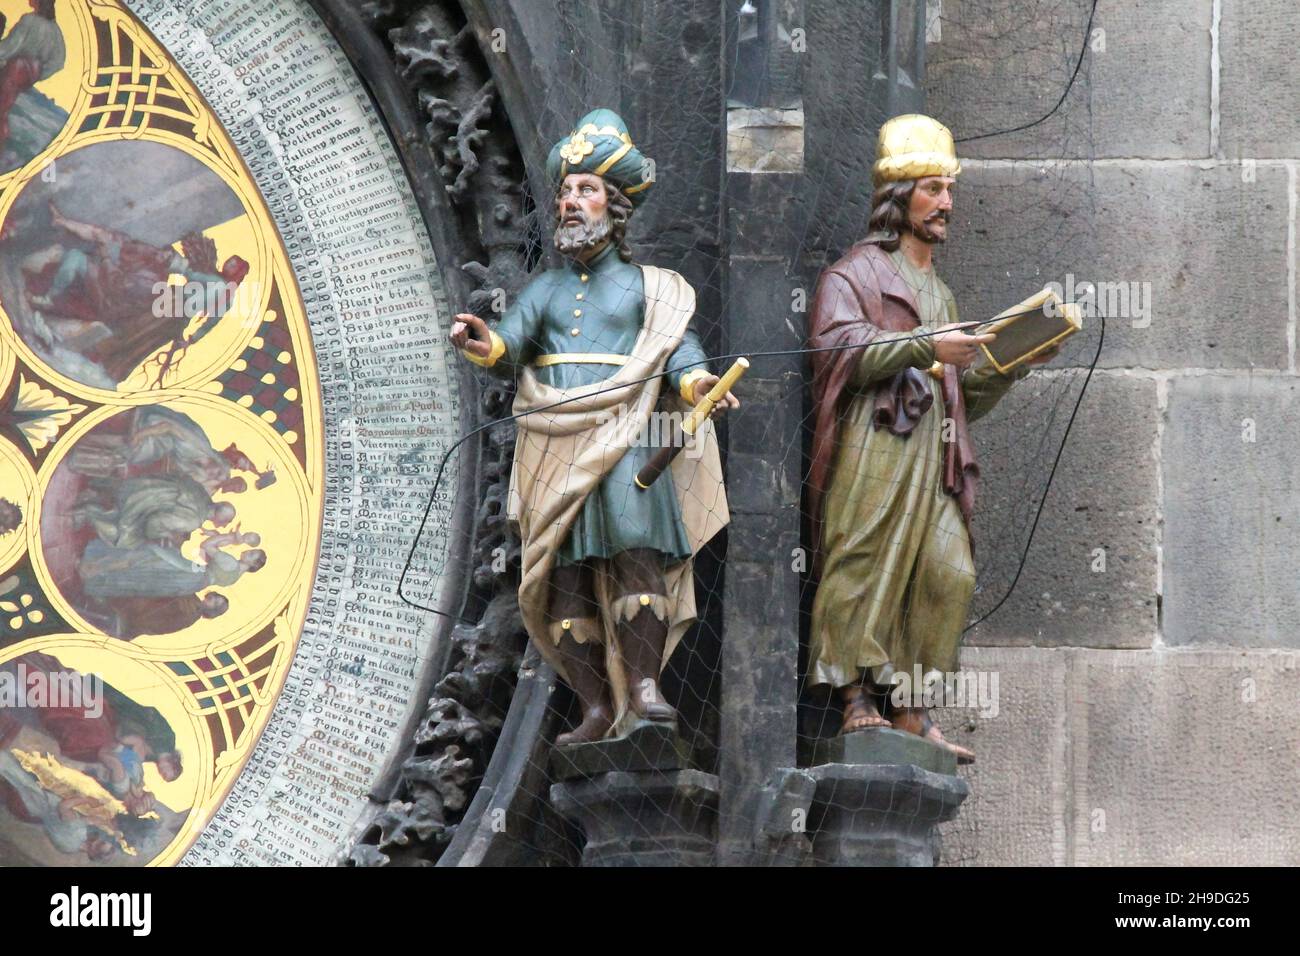 PRAGA, CHECO - 24 DE ABRIL de 2012: Estas son las figuras del astrónomo y el cronista cerca del dial del calendario del Reloj Astronómico de Praga. Foto de stock